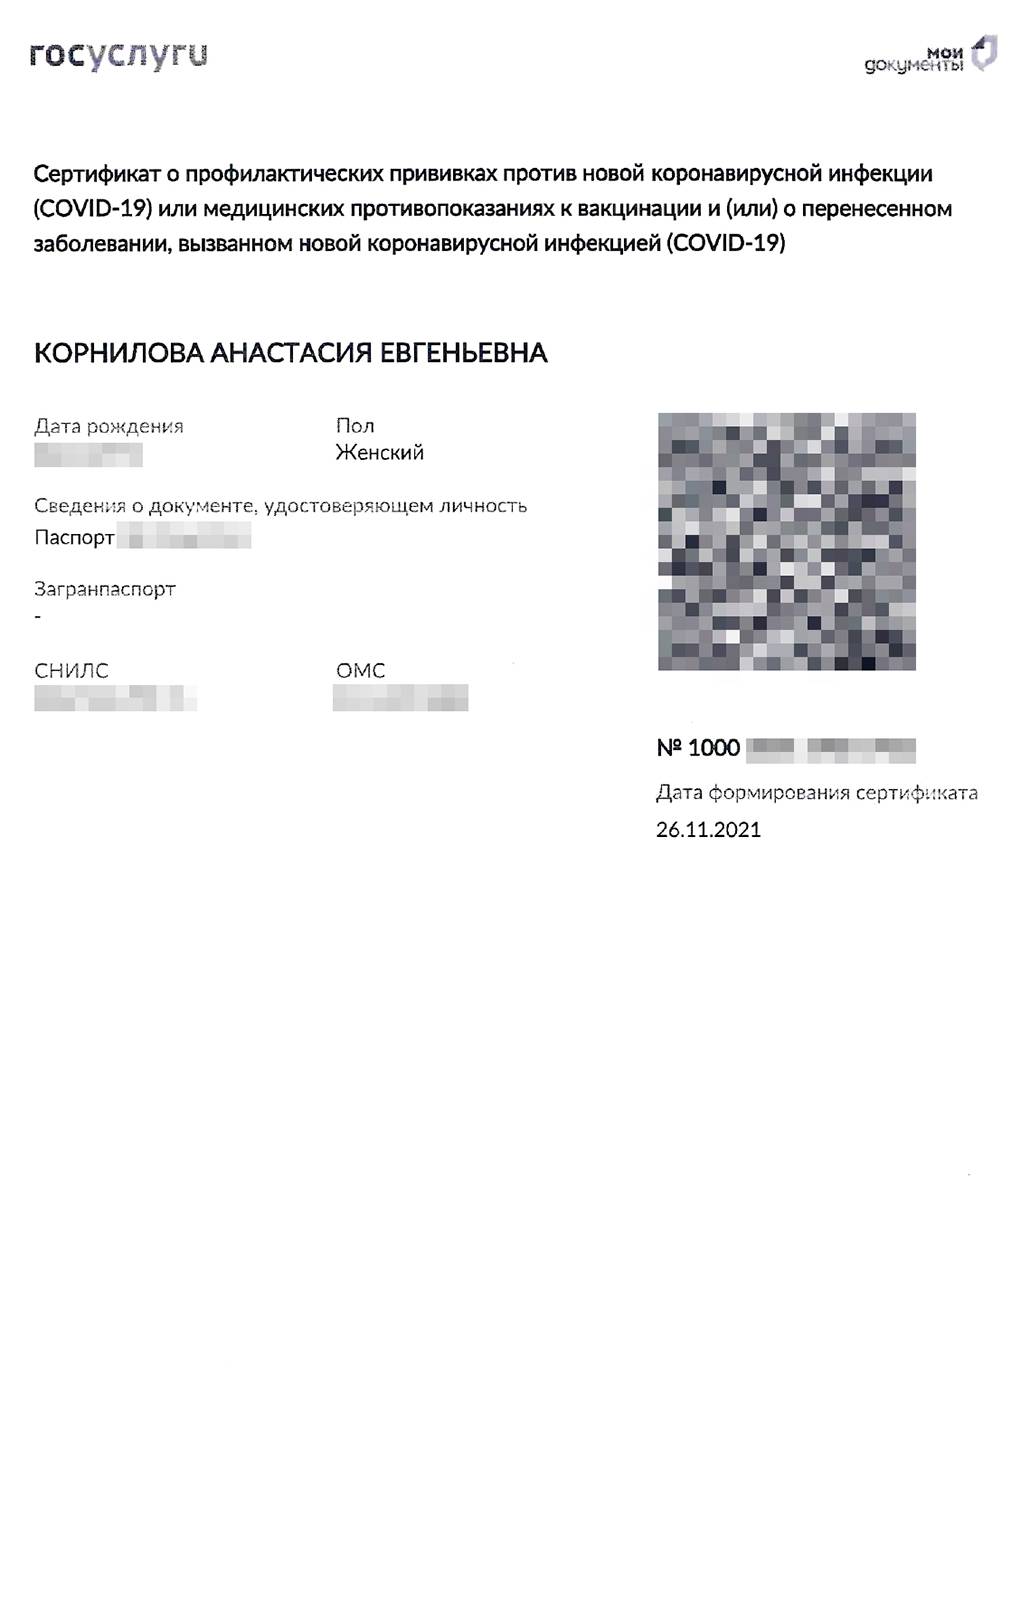 Как выглядит сертификат о вакцинации от коронавируса на госуслугах фото оригинал